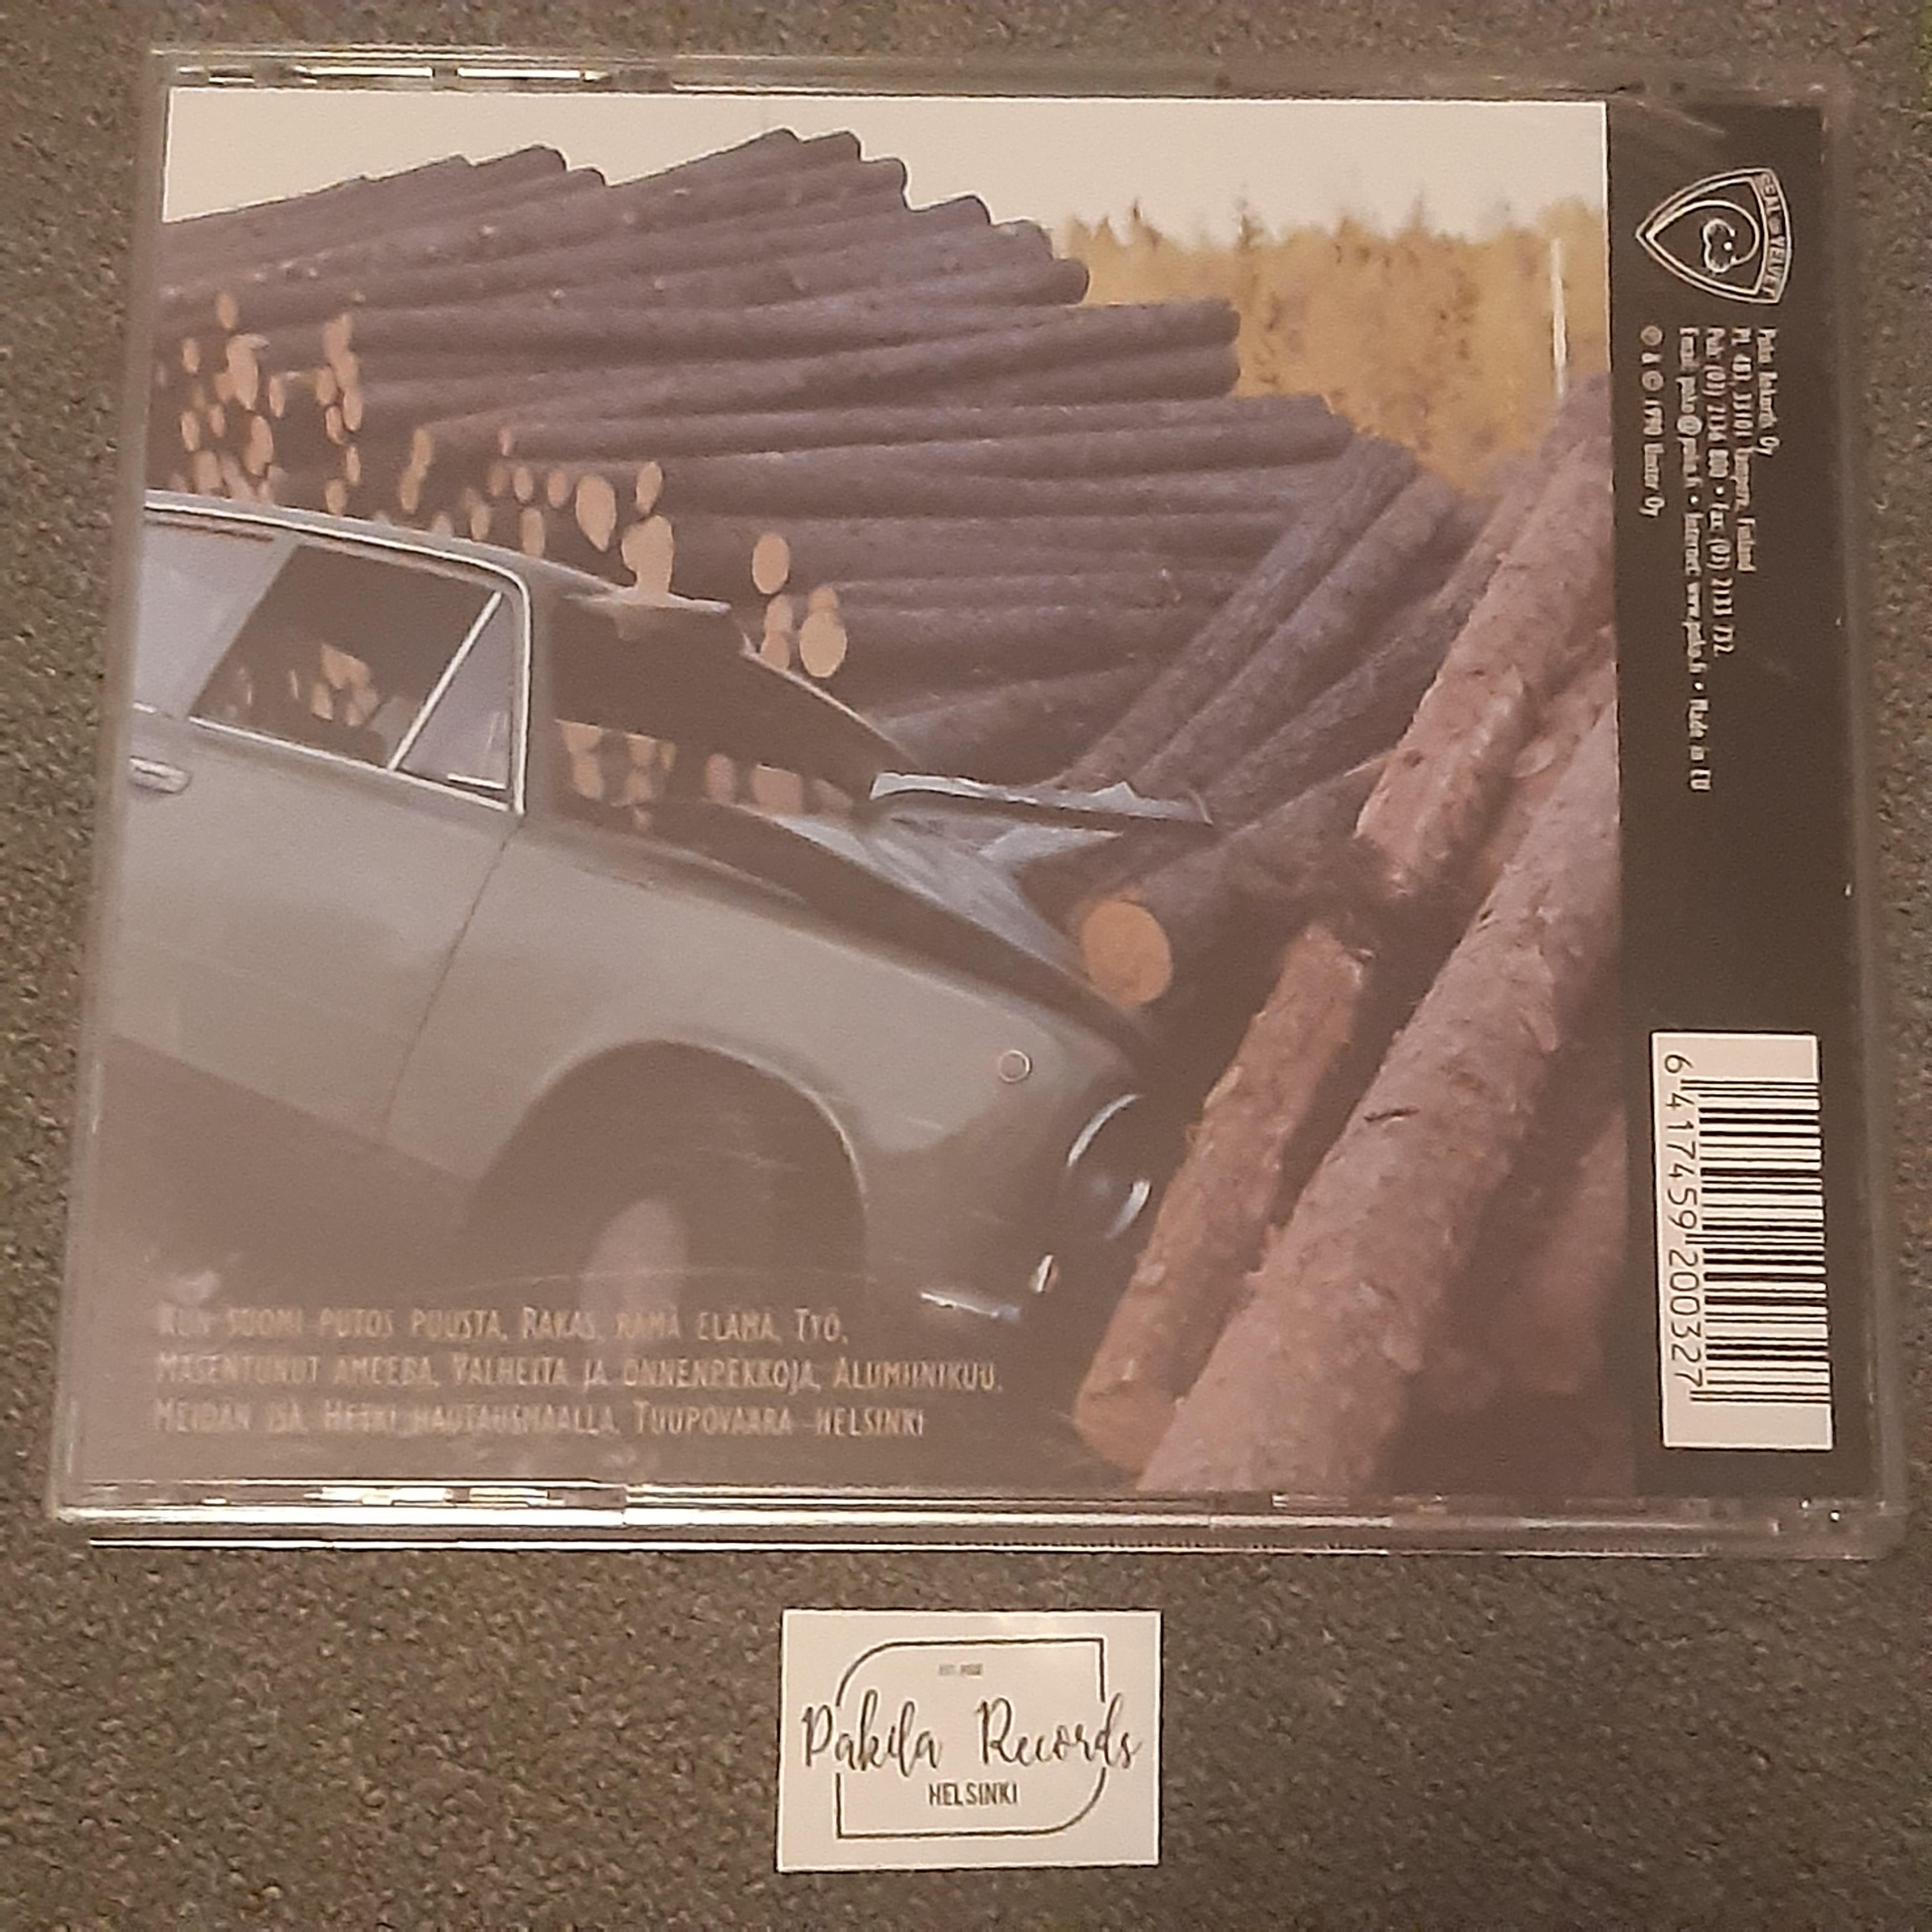 Ismo Alanko - Kun Suomi putos puusta - CD (käytetty)